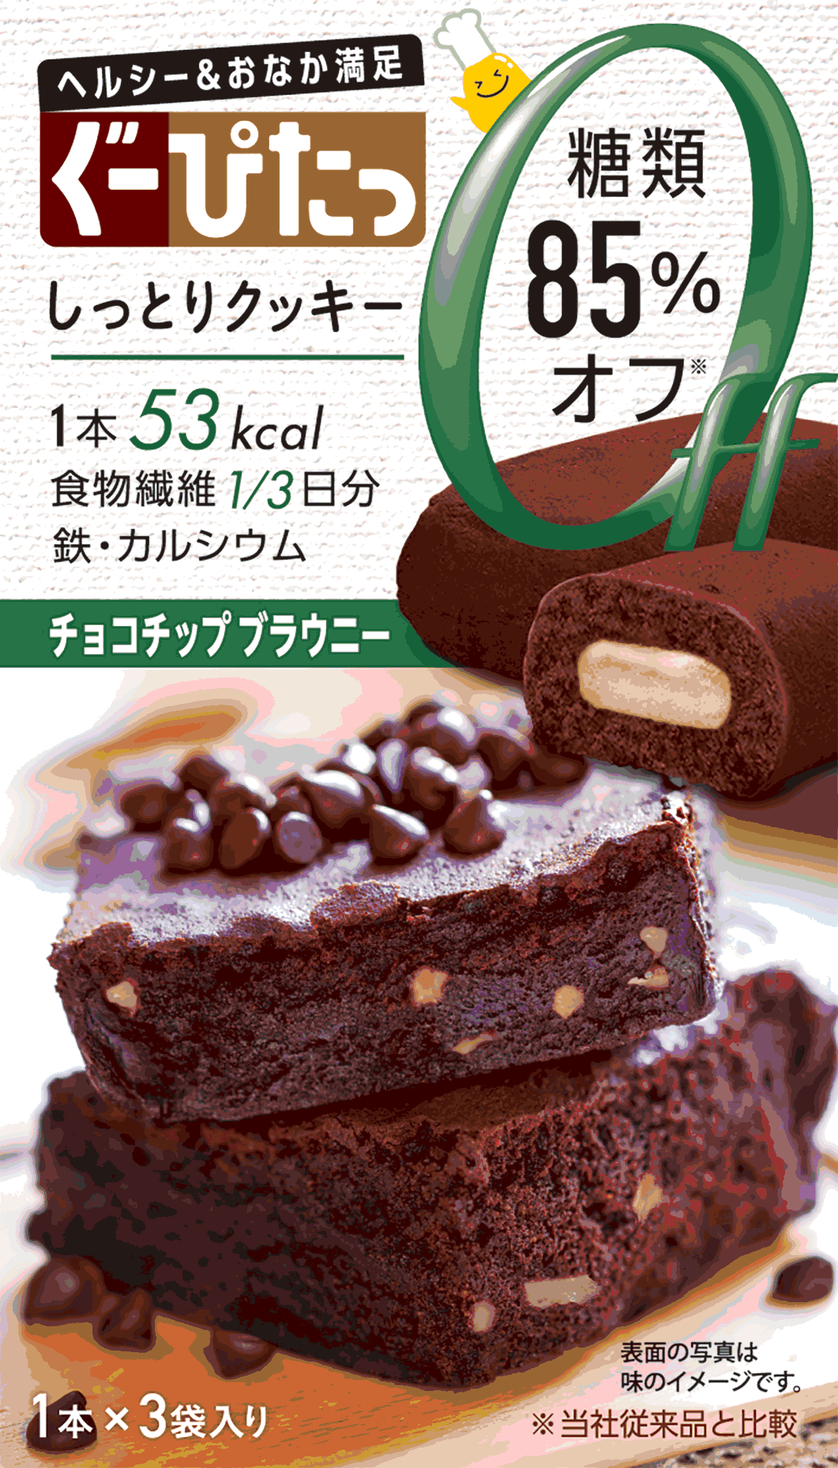 85 糖類オフ ぐーぴたっ から新フレーバー チョコチップブラウニー 株式会社ナリス化粧品のプレスリリース